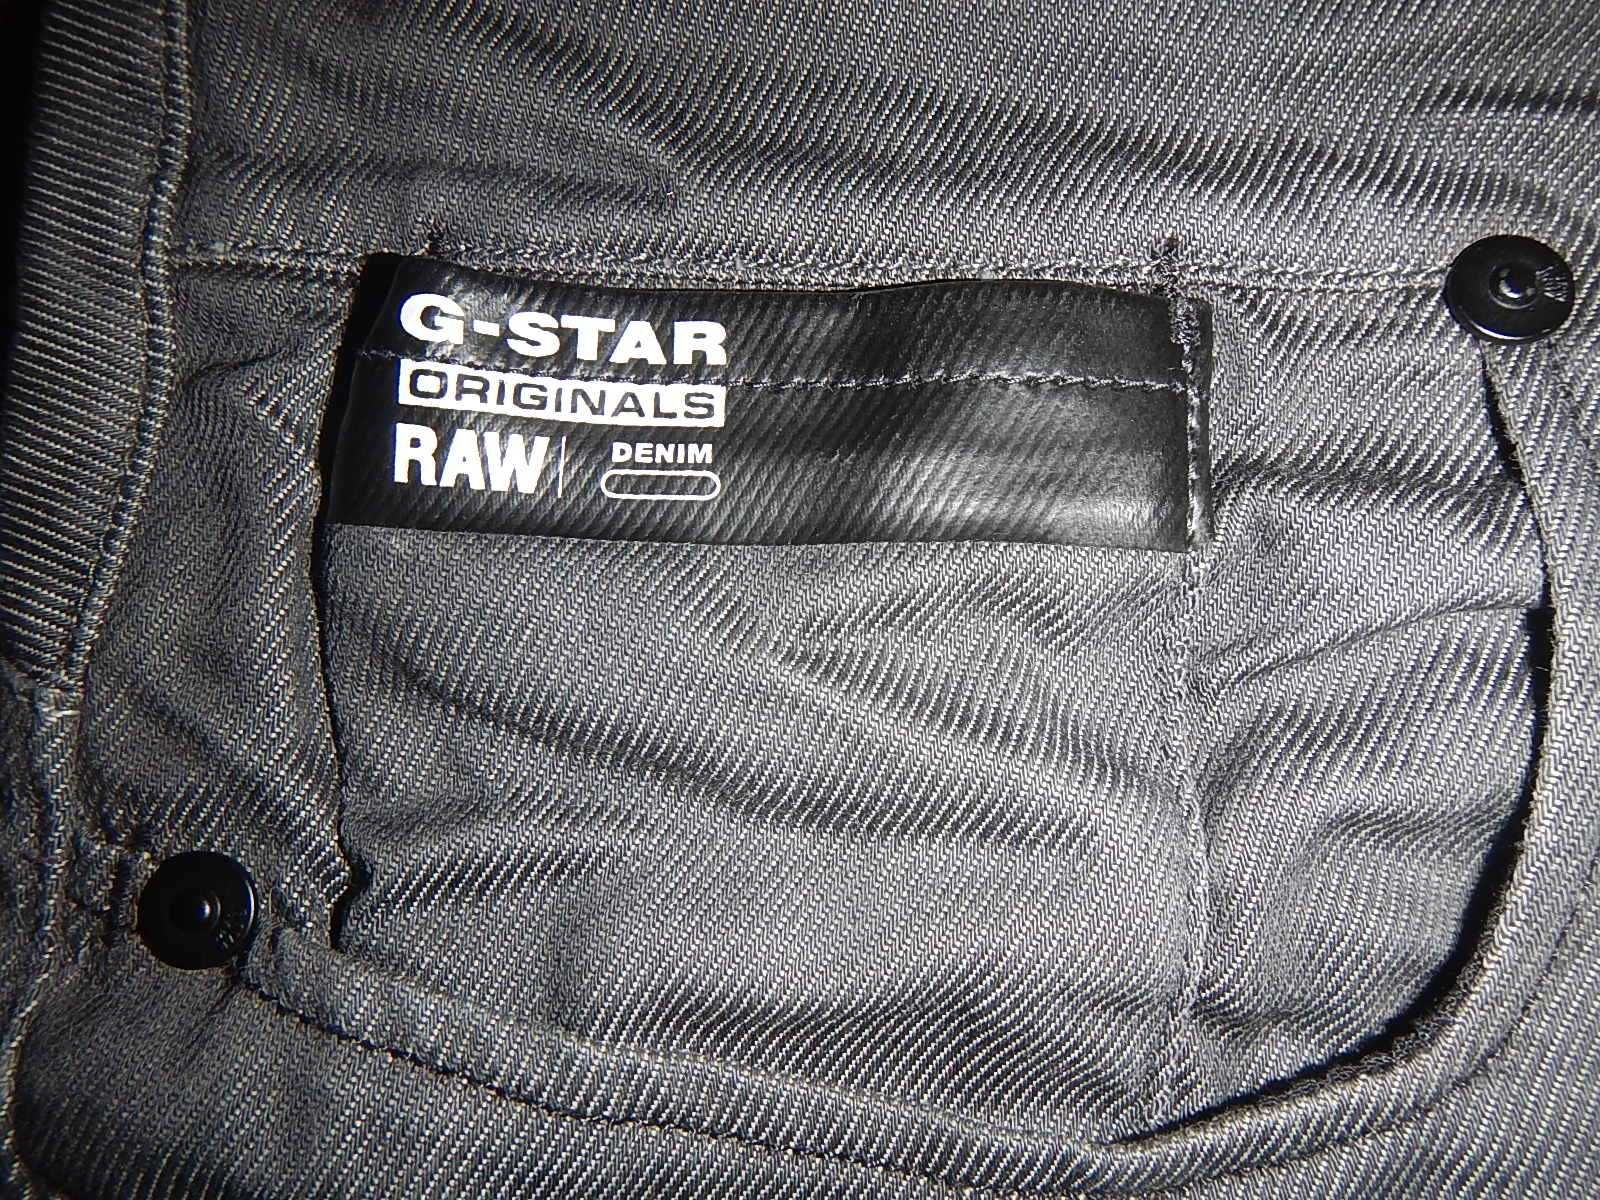 Pantaloni/jeans G-Stat Raw. Marimea L-Men.